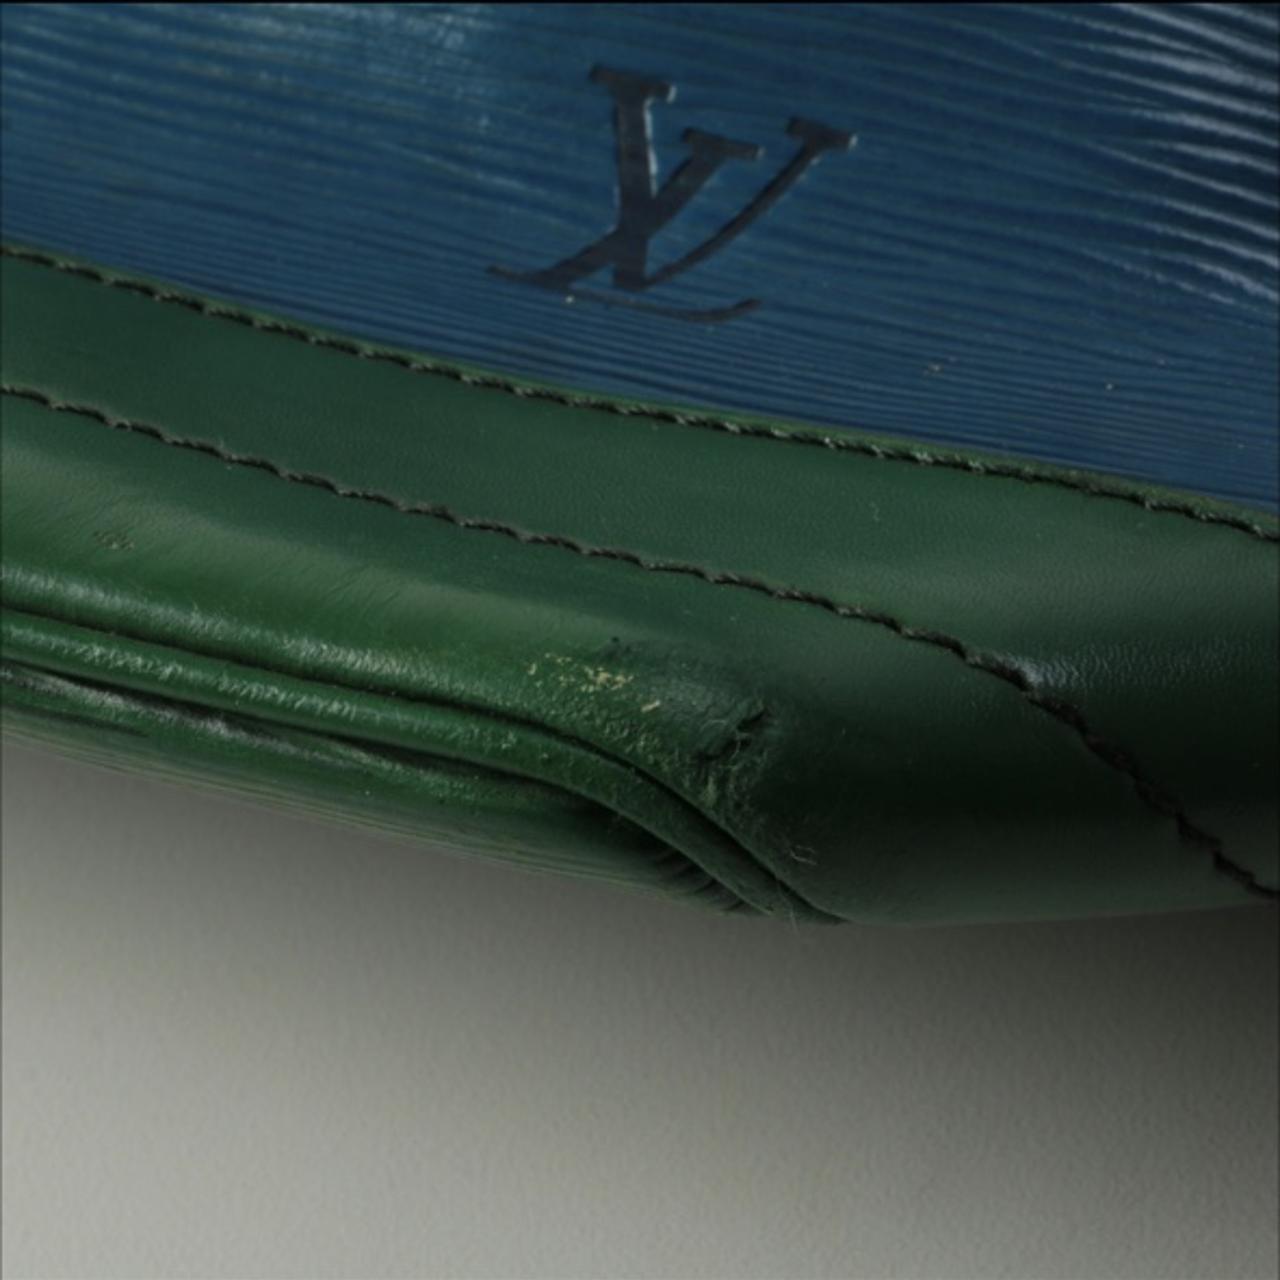 Louis Vuitton Printemps Ete Bucket Noe Leather - Depop